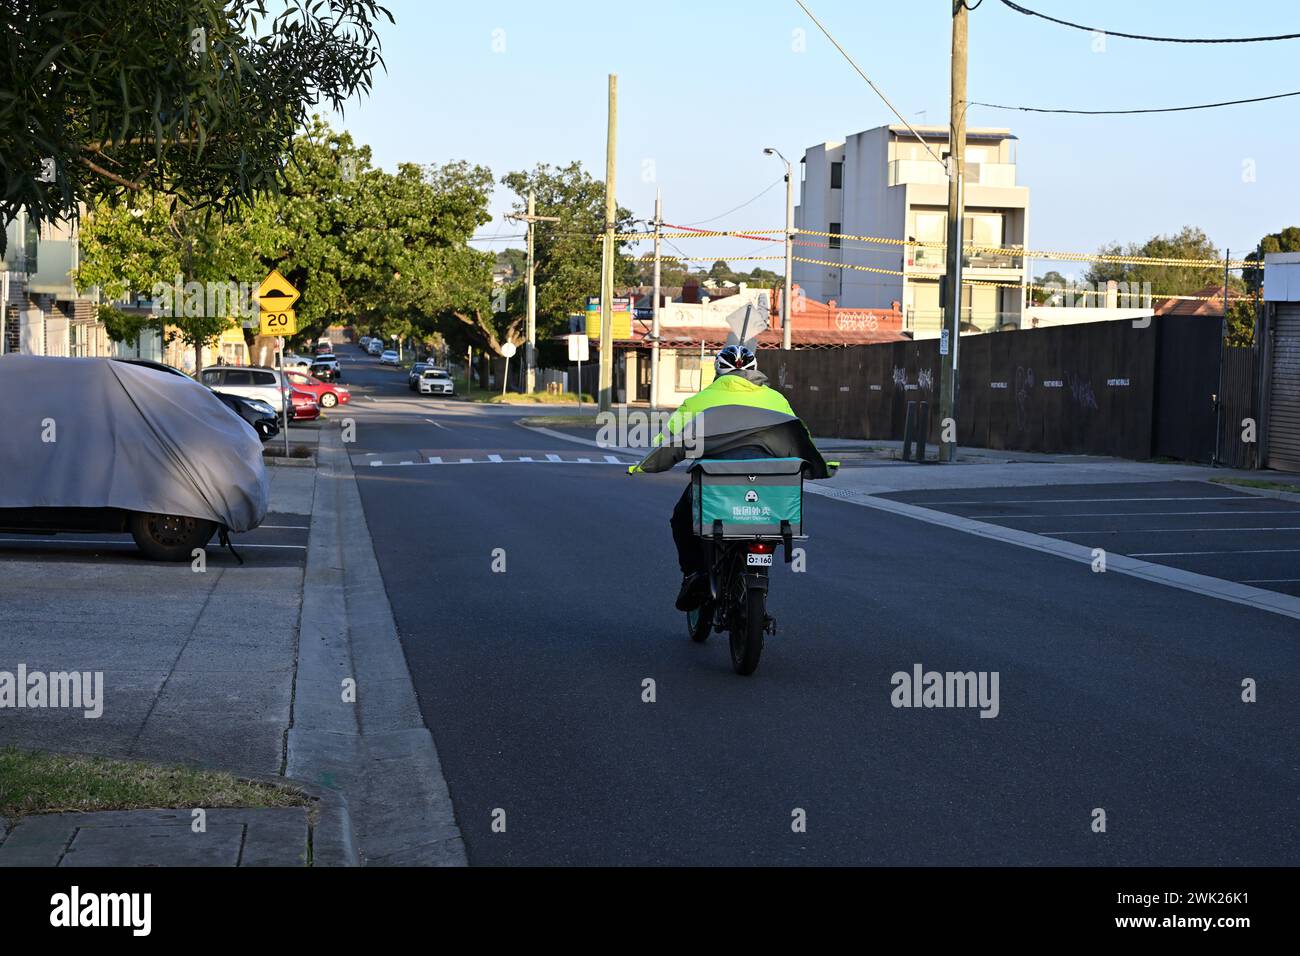 Vue arrière d'un livreur Fantuan, sur un vélo, alors qu'ils descendent une rue calme et ombragée de la banlieue de Melbourne Banque D'Images